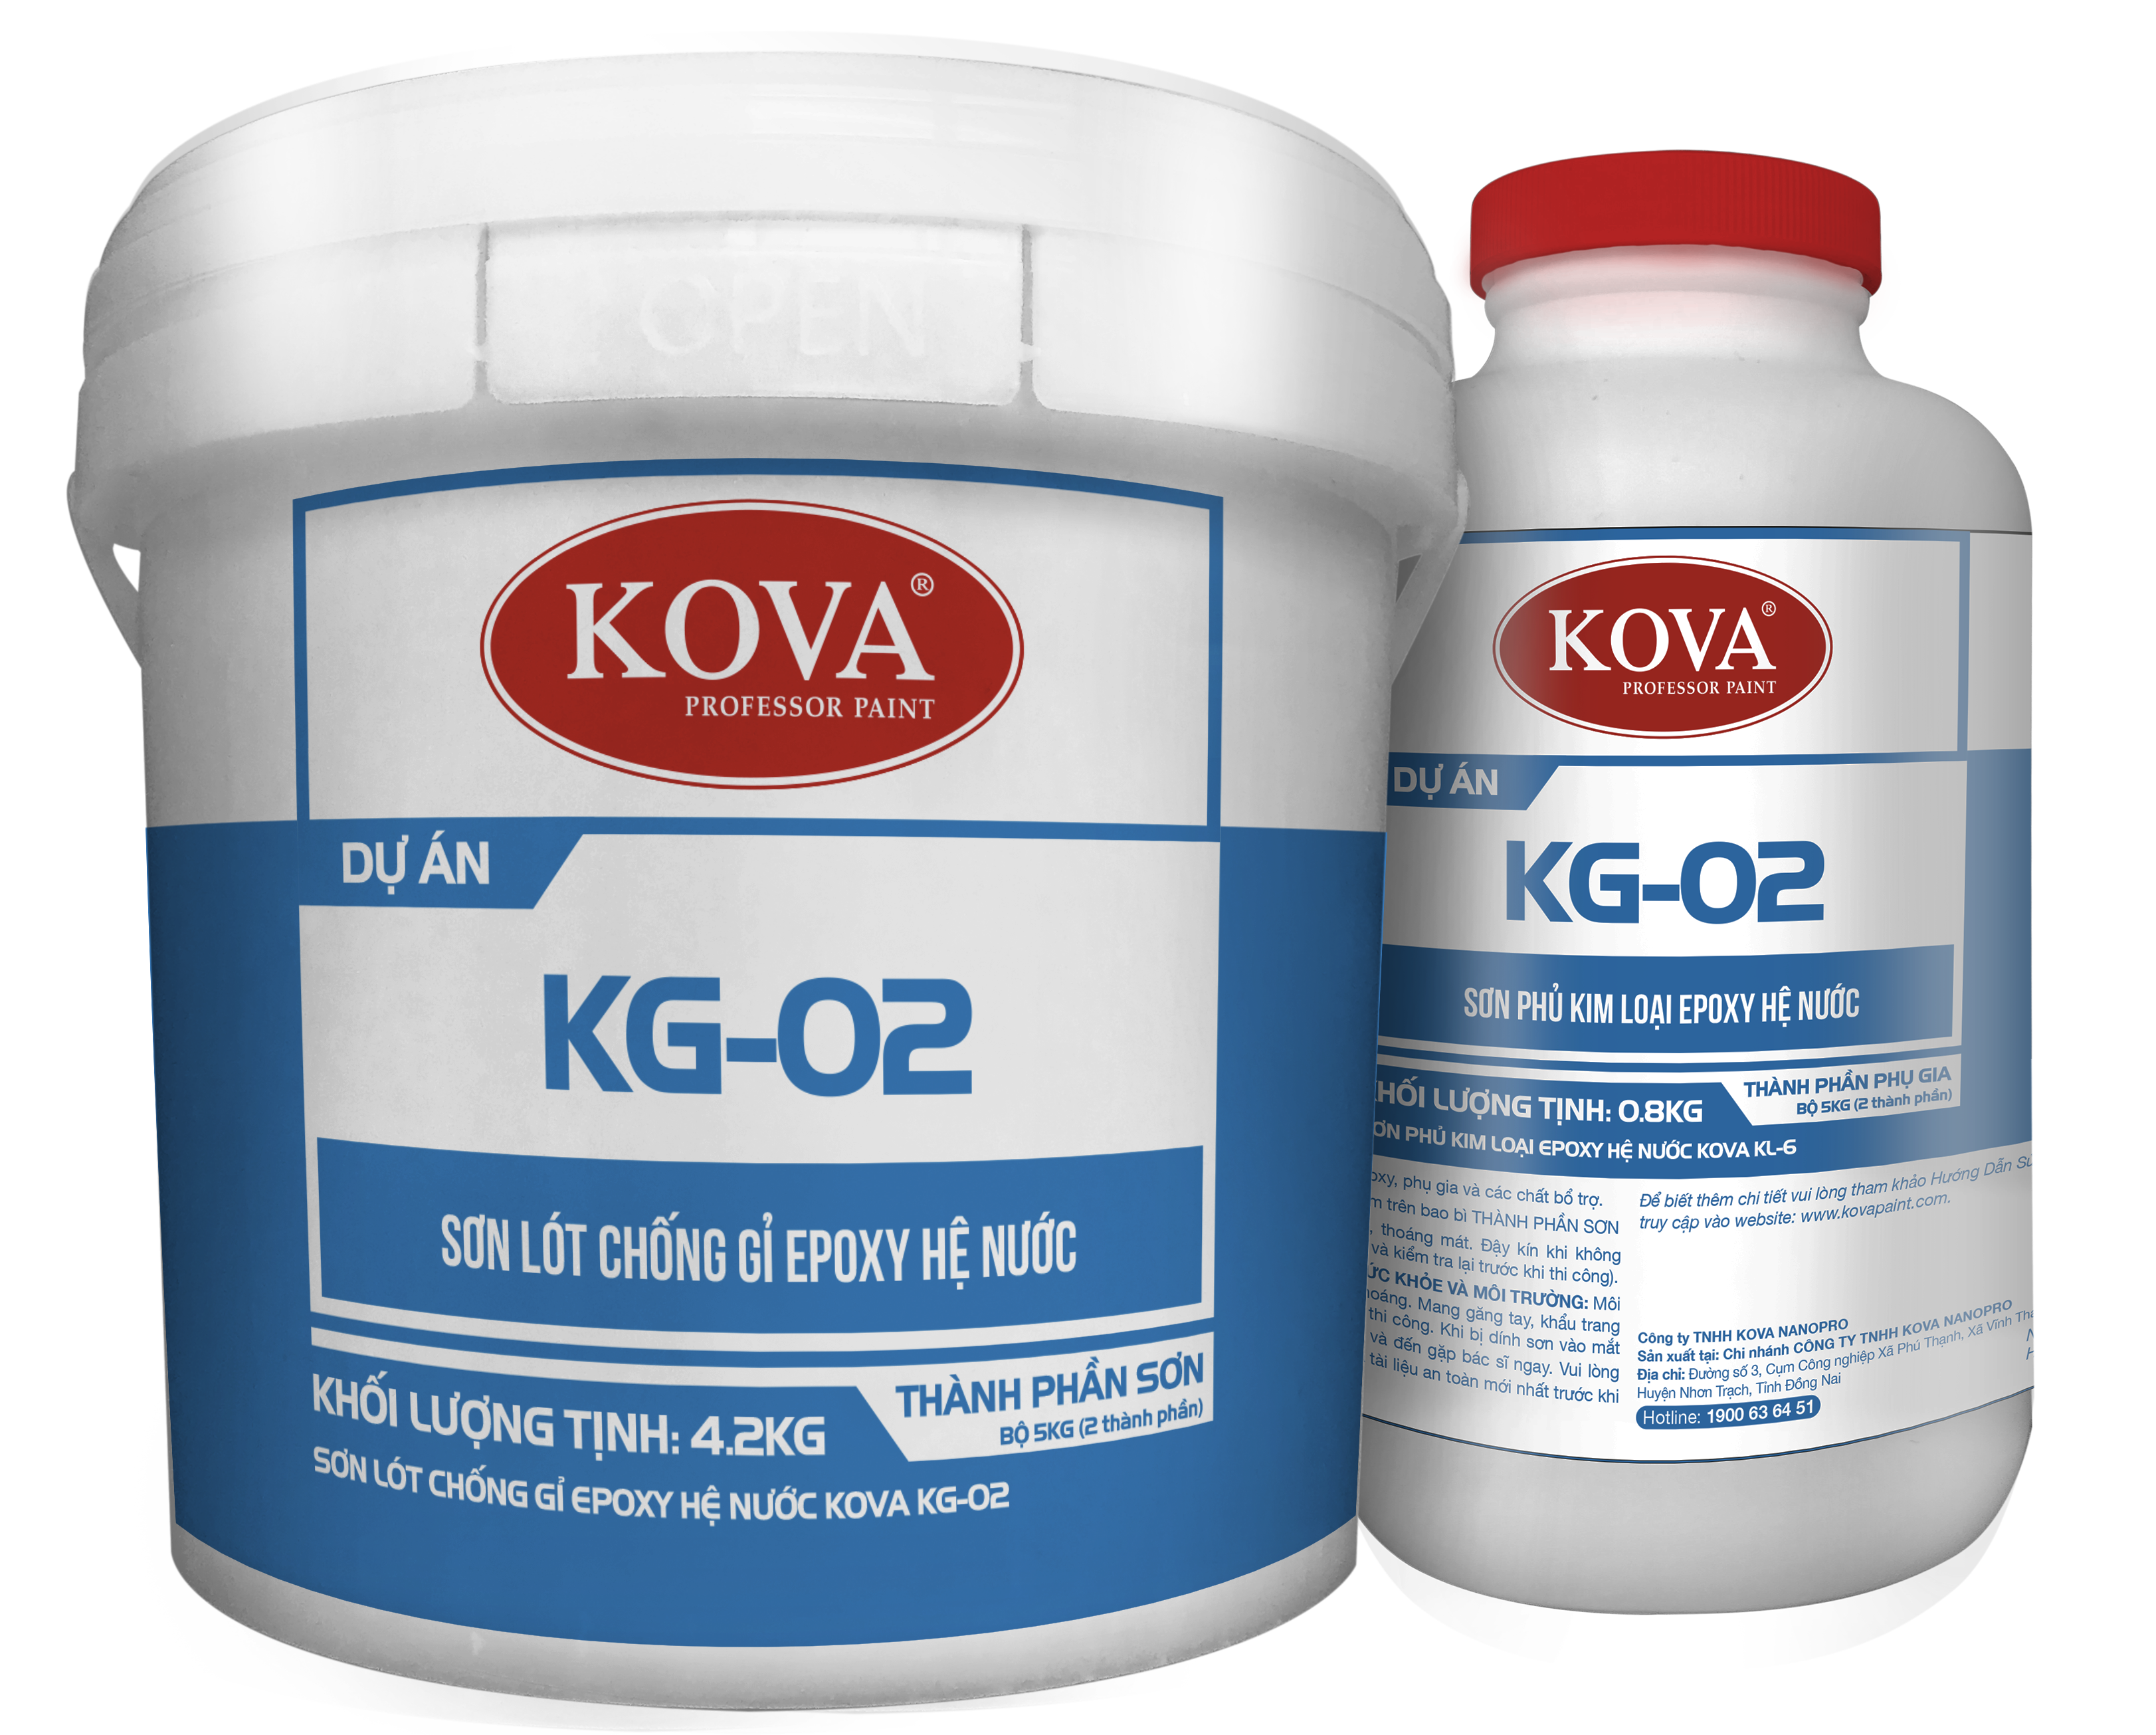 Sơn lót chống gỉ Epoxy hệ nước Kova KG-02 có khả năng bảo vệ tốt cho các kết cấu sắt thép, giúp kéo dài tuổi thọ cho công trình của bạn. Đừng bỏ lỡ cơ hội khám phá sản phẩm bằng cách xem ảnh ngay nhé!